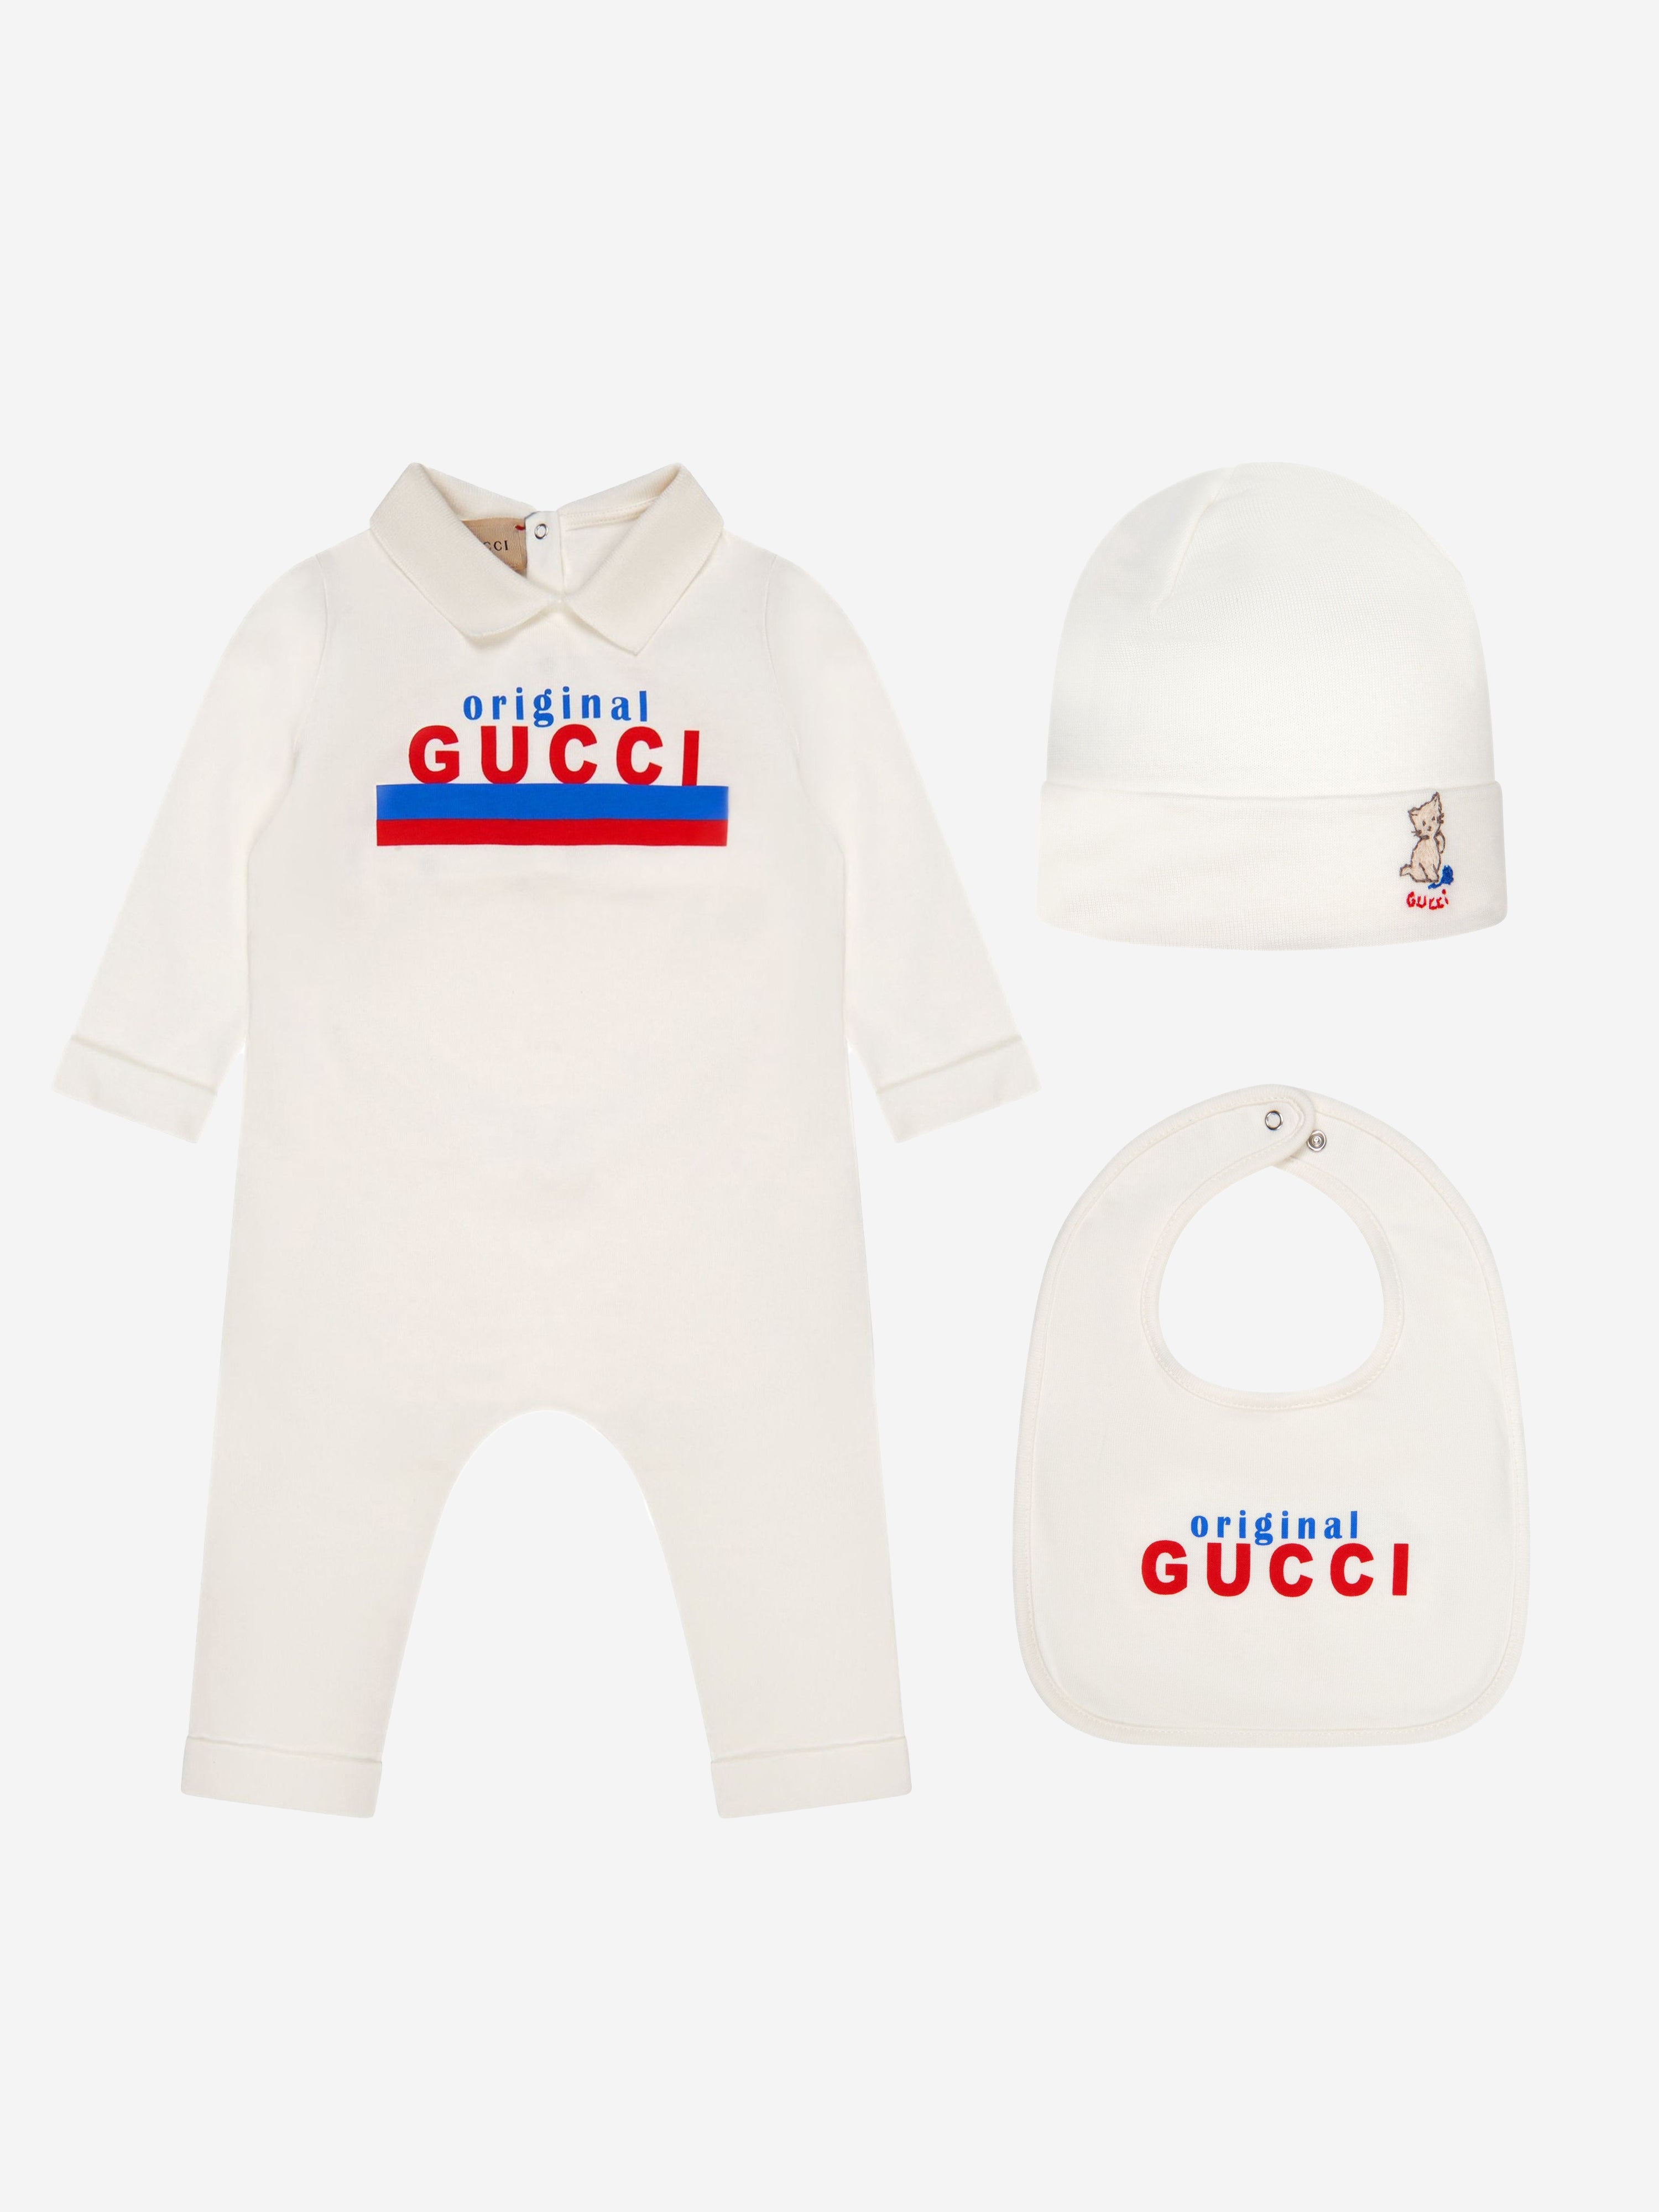 Gucci Baby Unisex Romper 6 - 9 Mths White